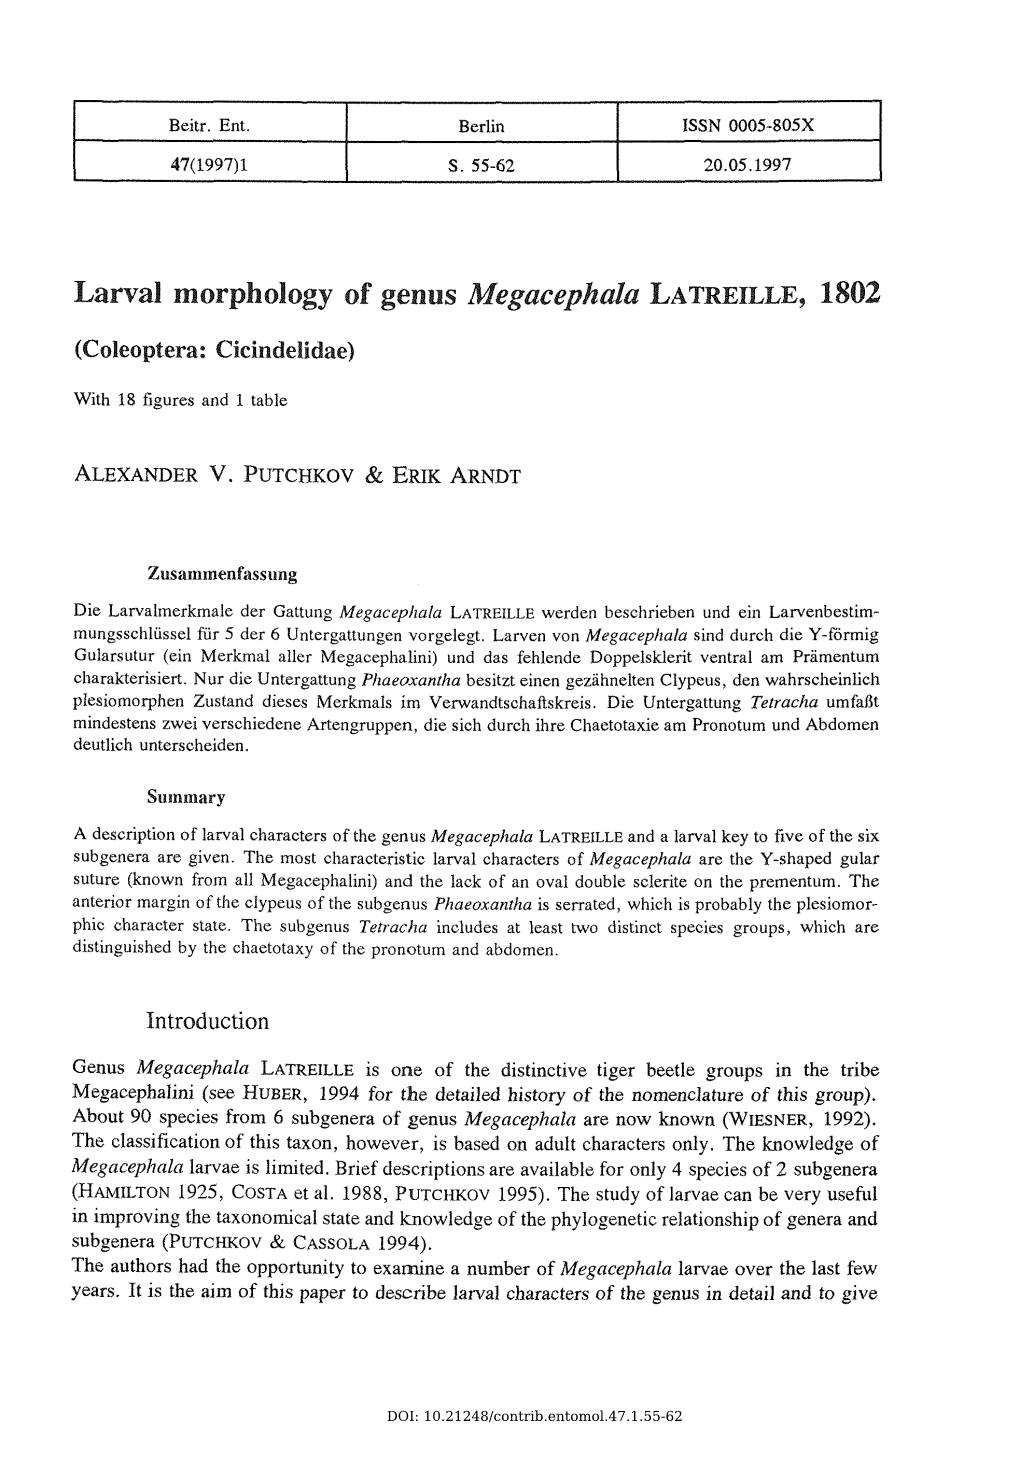 Larval Morphology of Genus Megacephalalatreille, 1802